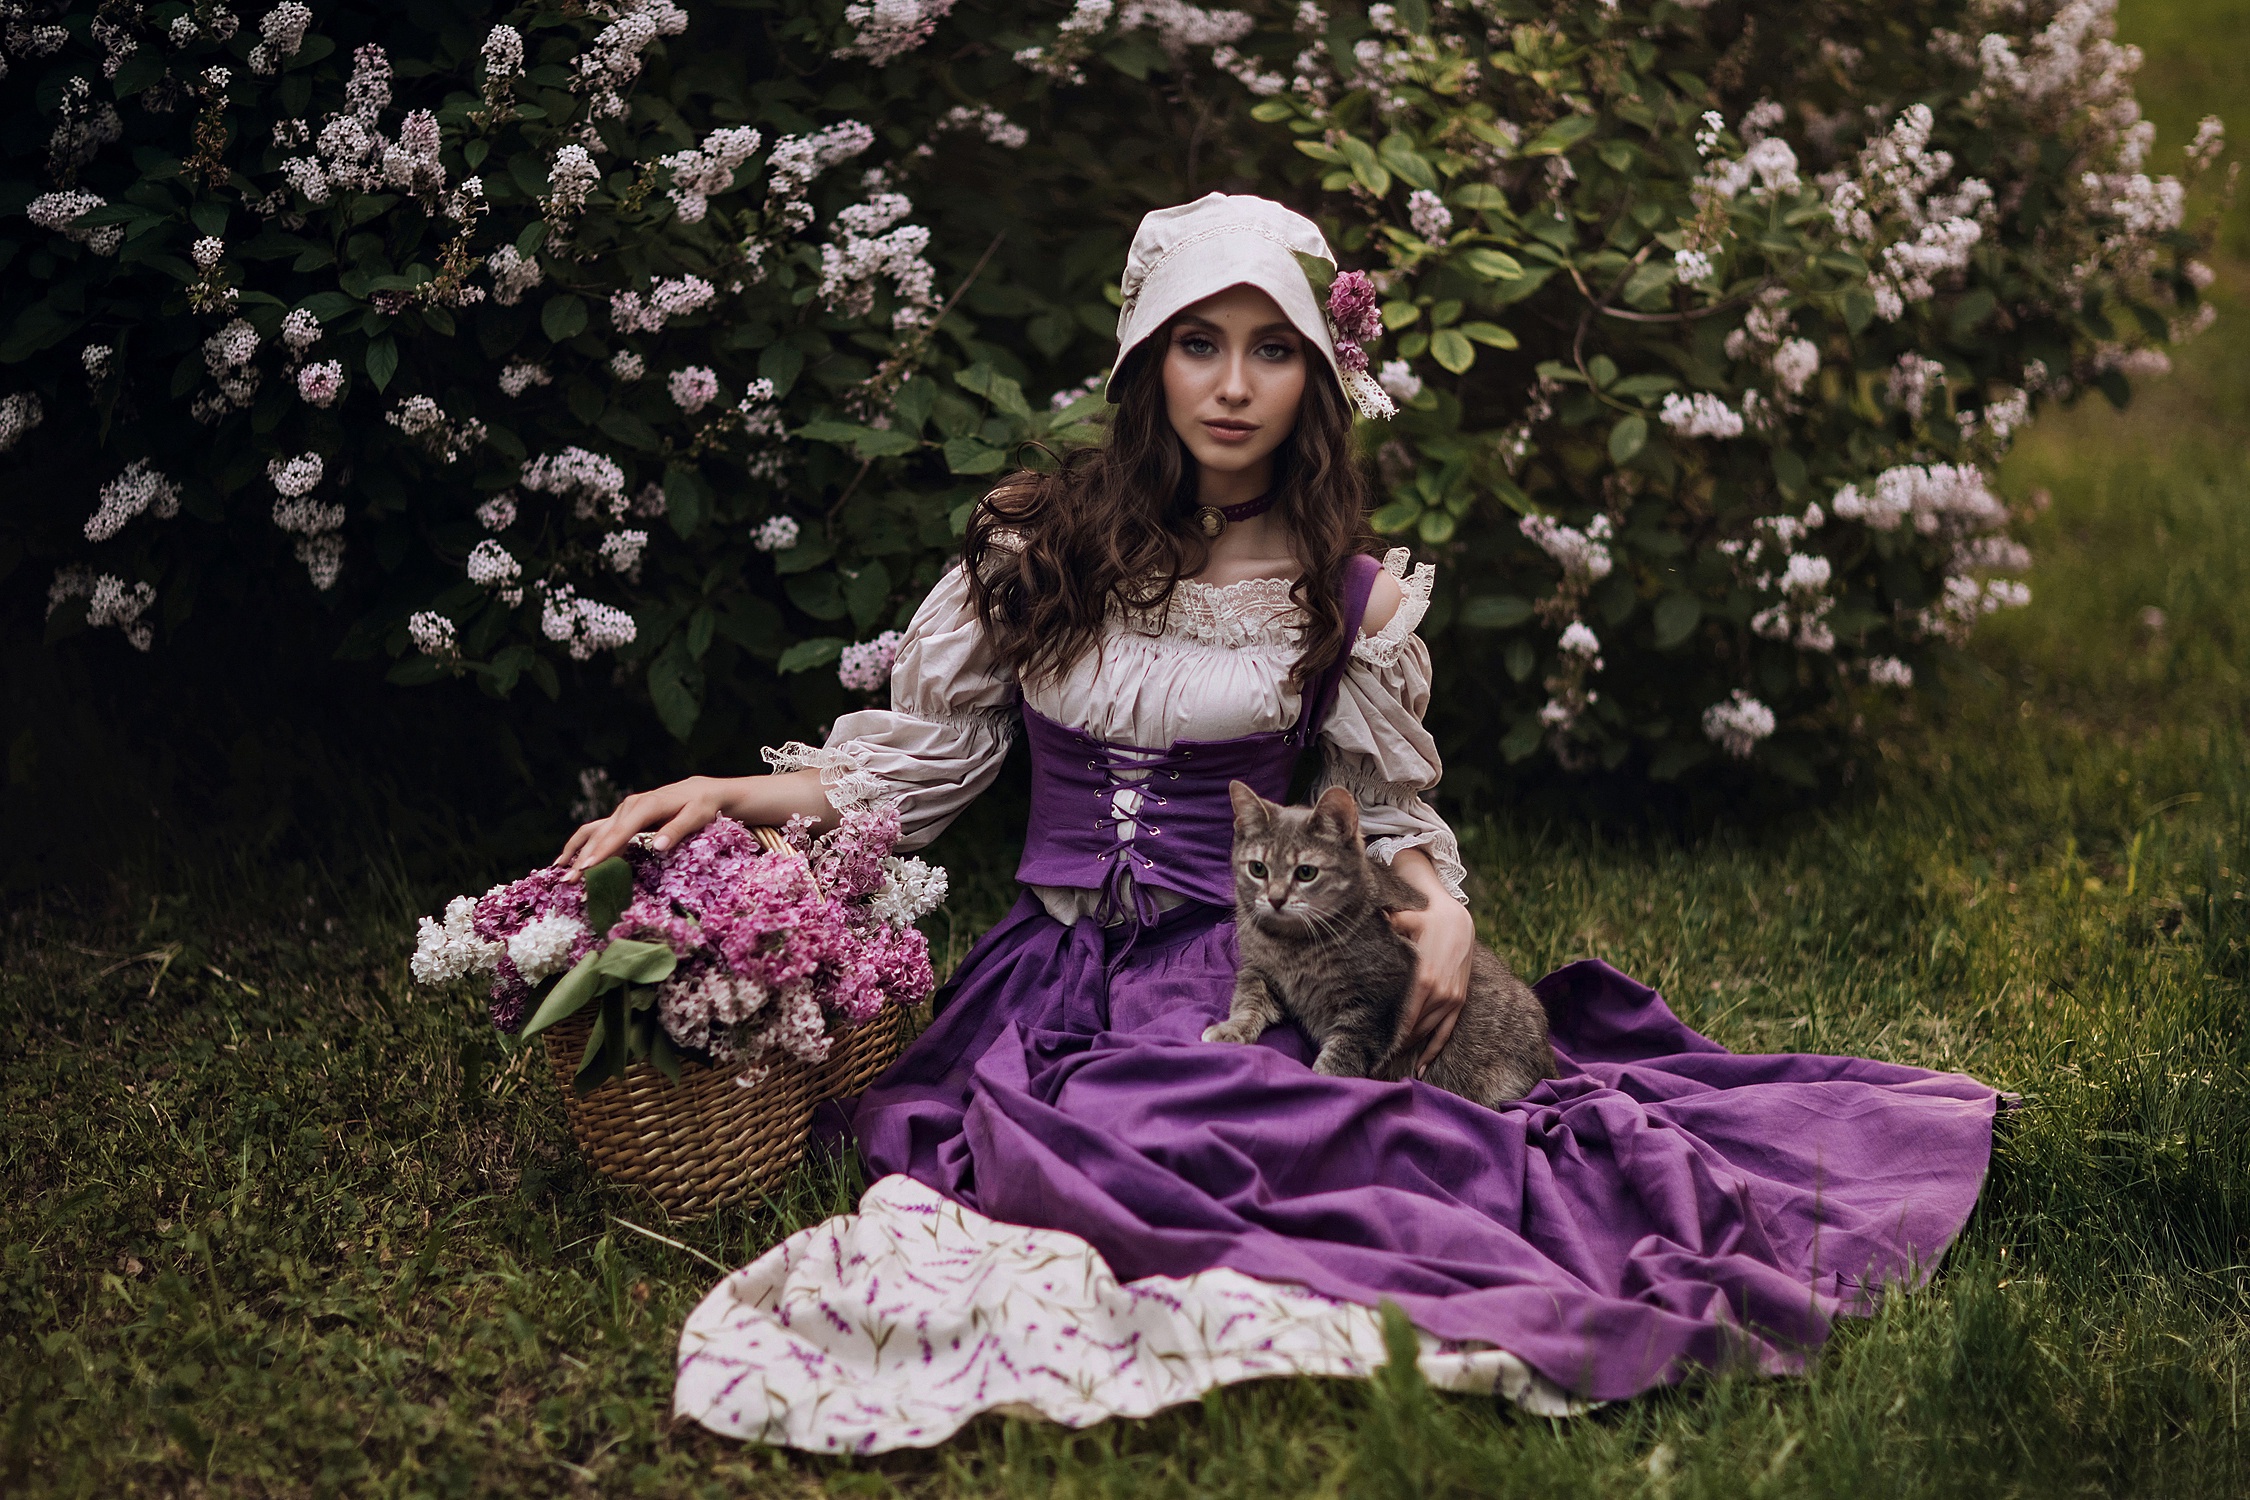 Women Model Purple Dress Dress Purple Clothing Baskets Plants Flowers Fantasy Girl Women Outdoors Ha 2250x1500